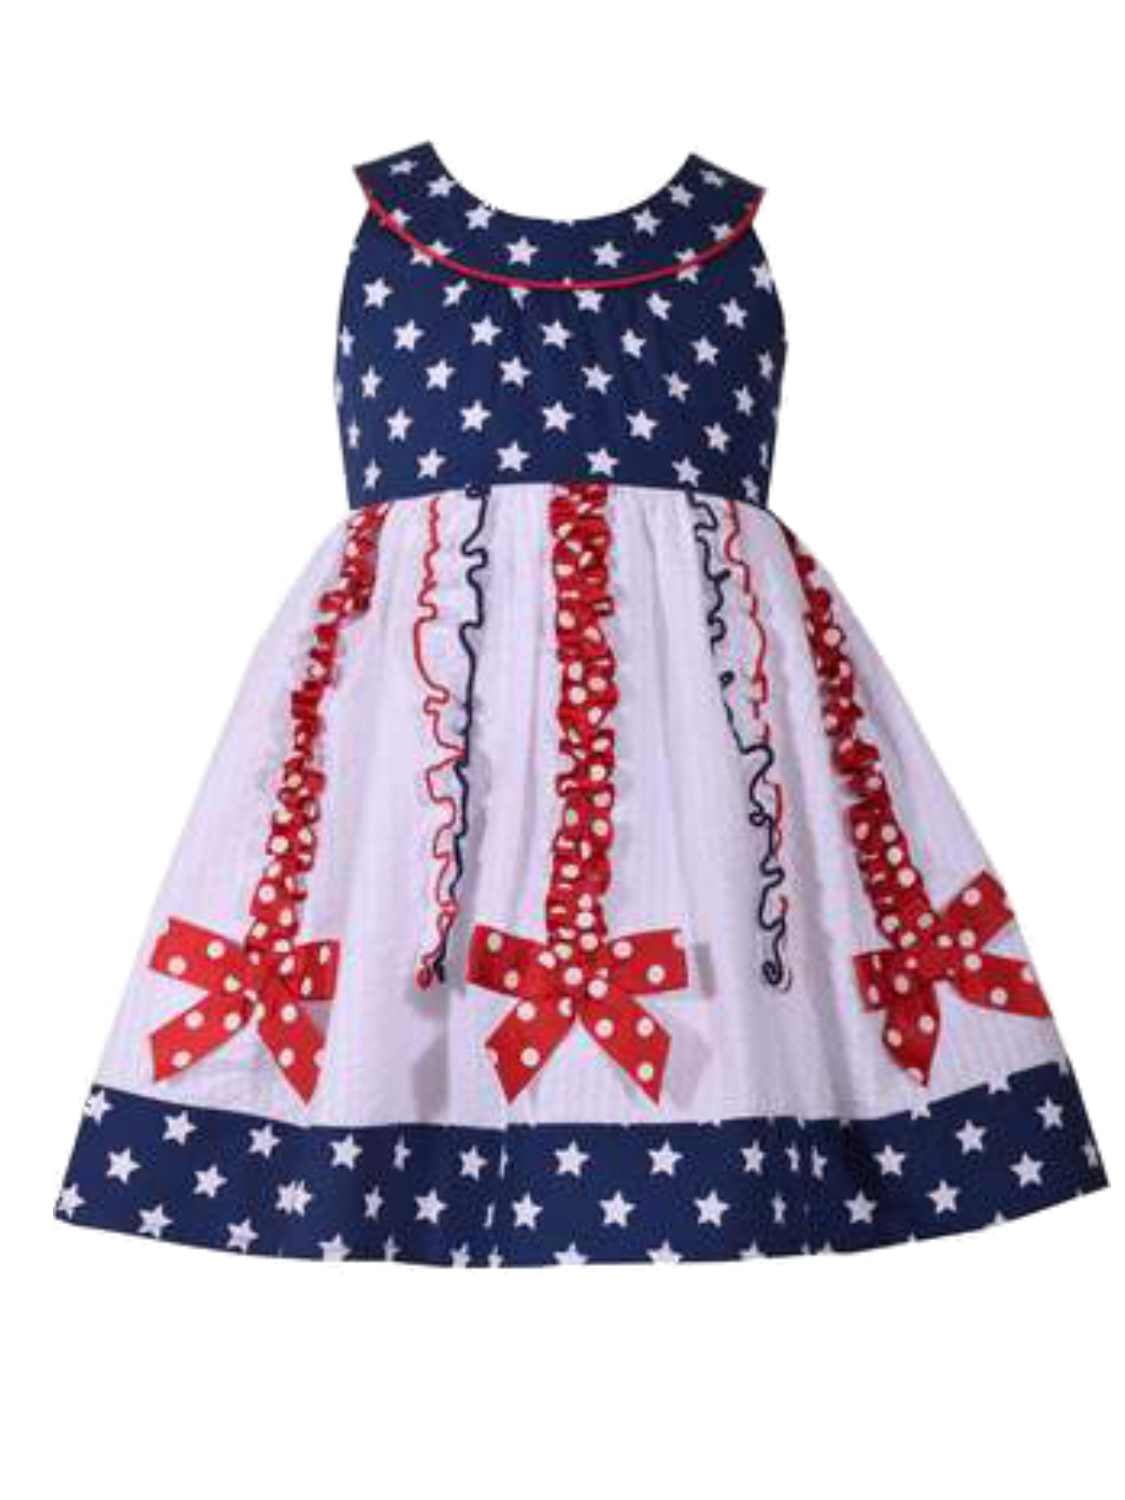 Summer Holiday Dress Polka Dot ...